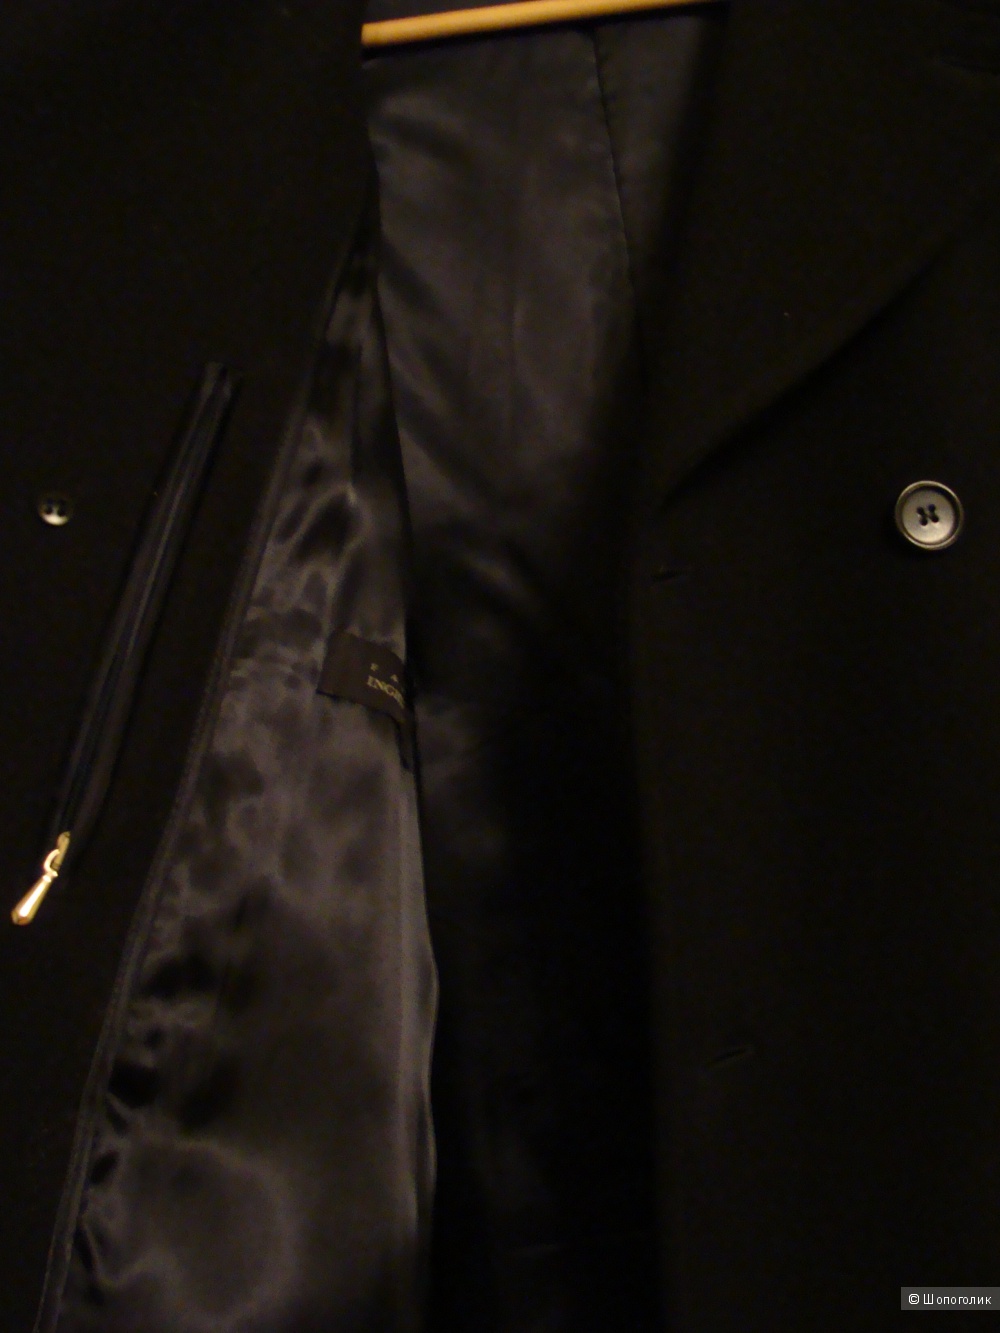 Пальто шерстяное Fabio Inghirami размер L/50